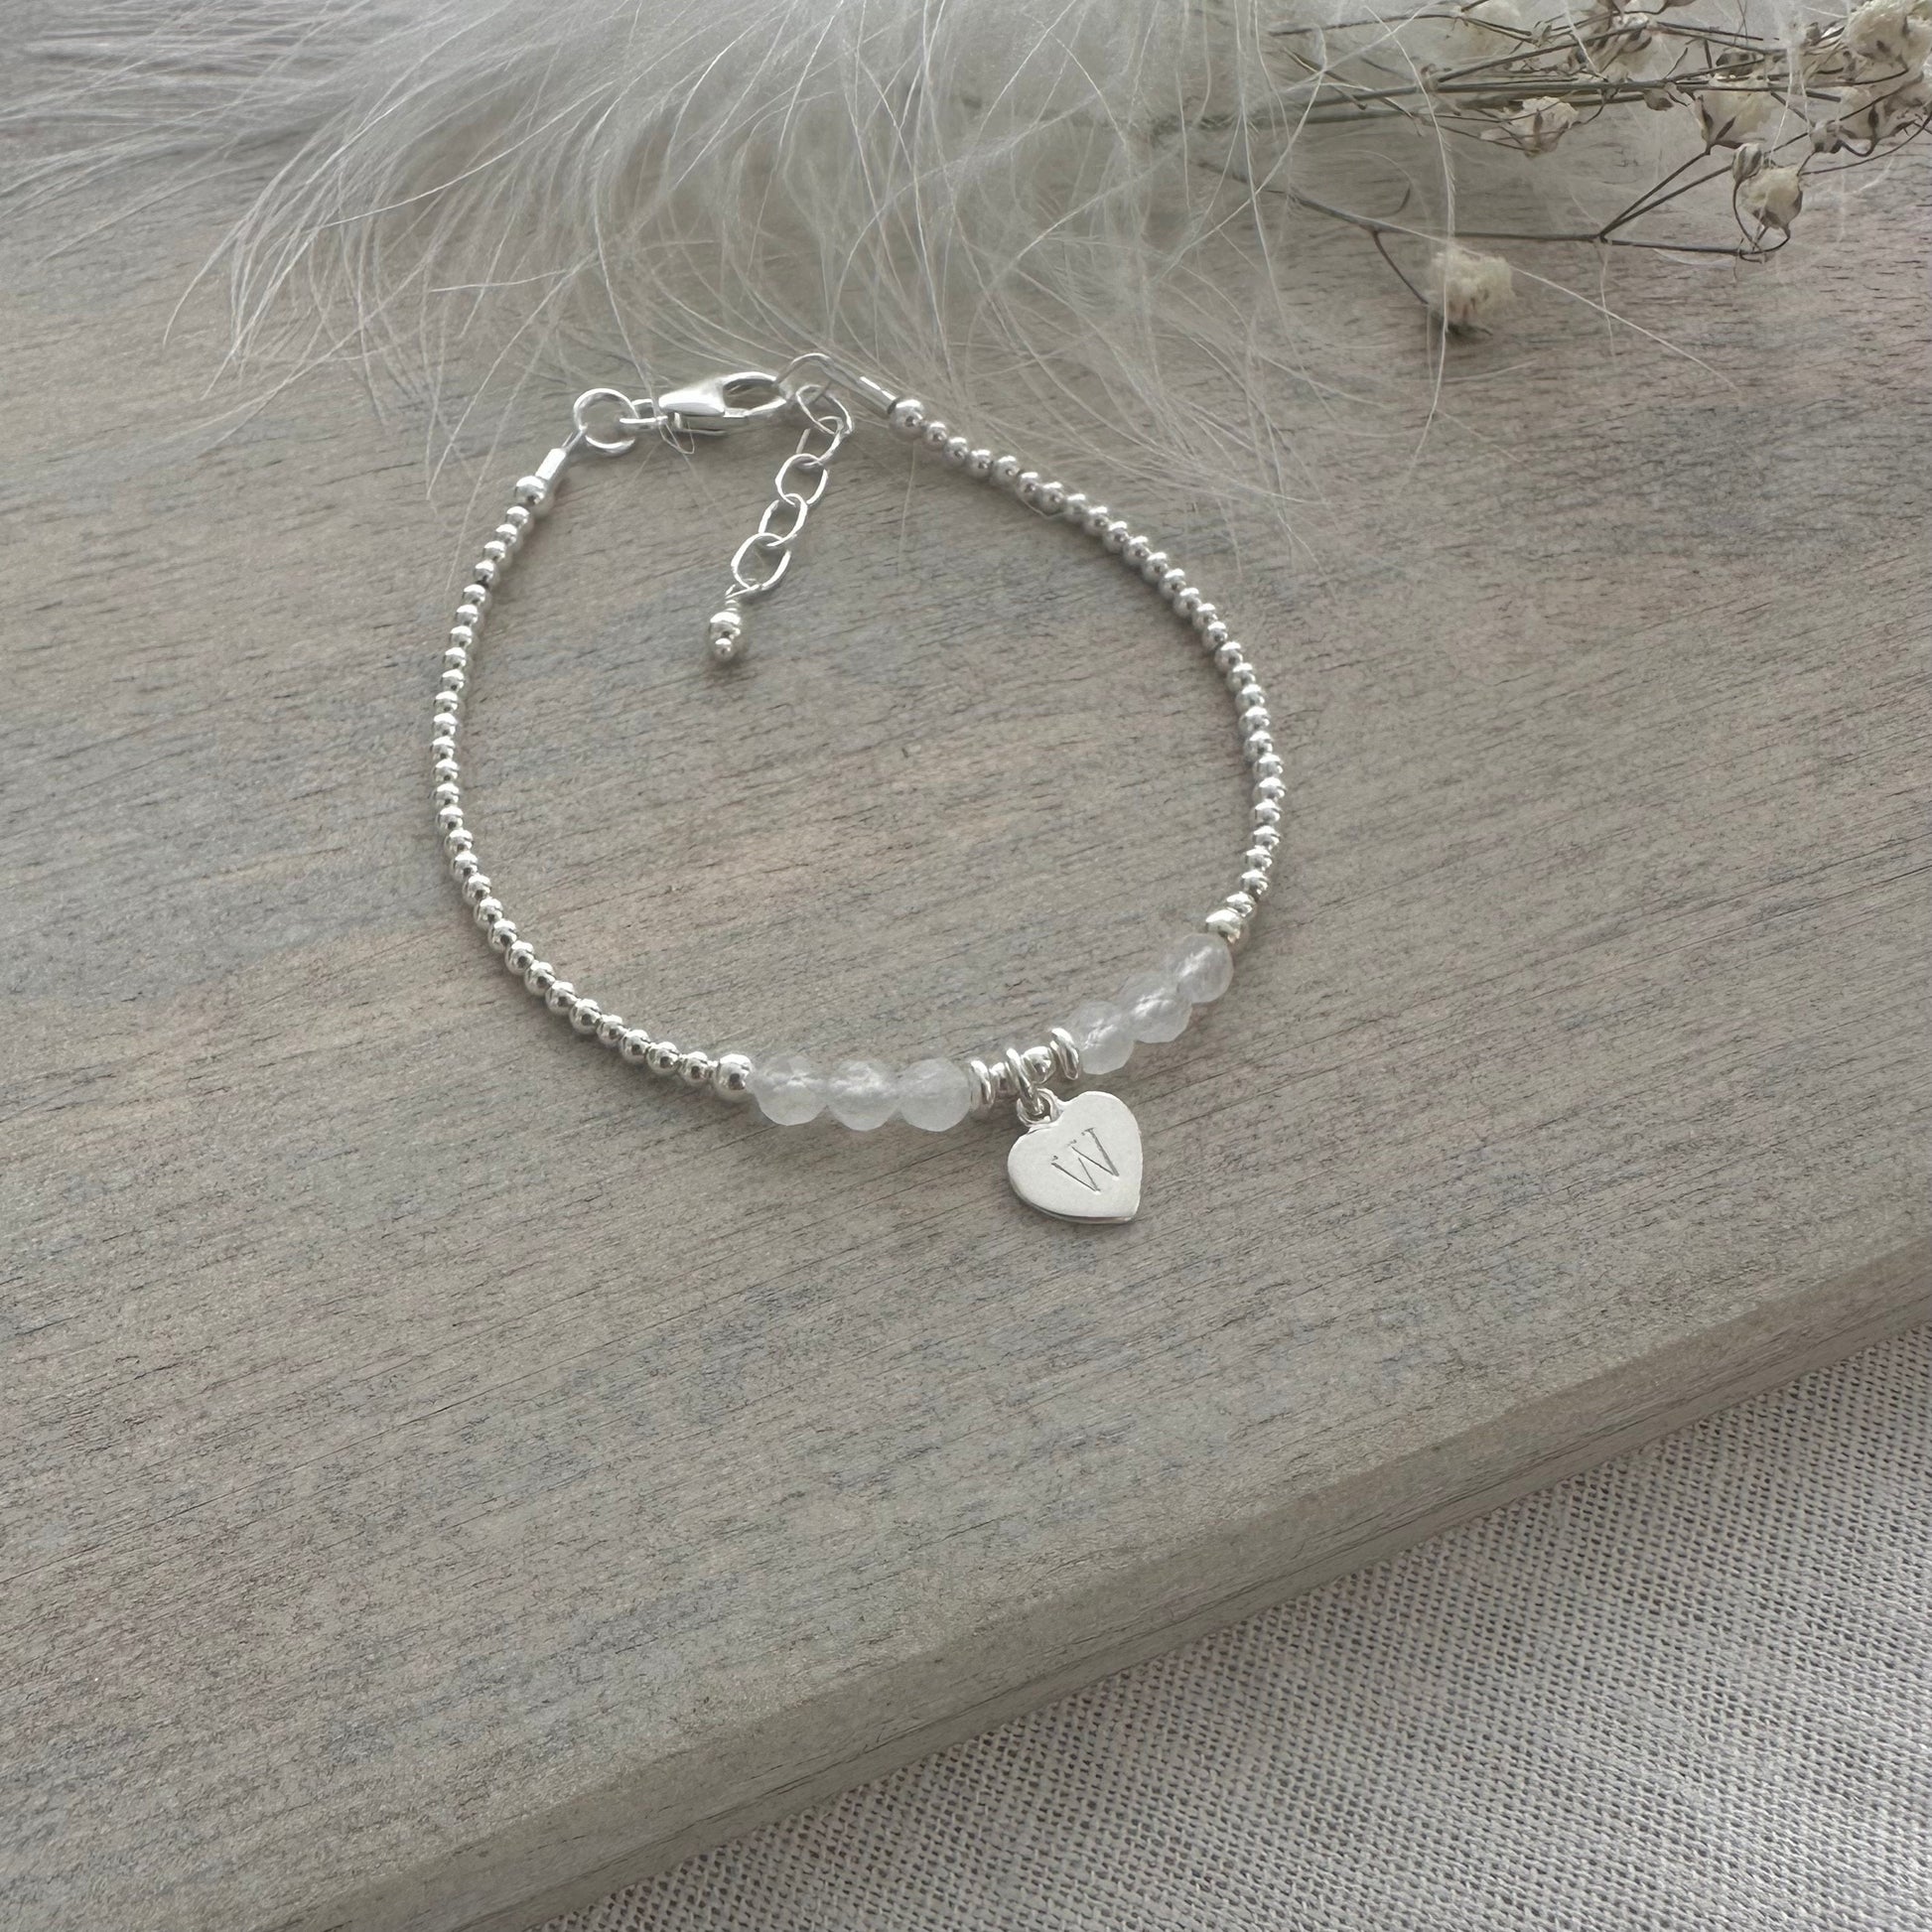 Personalised June Birthstone Bracelet, Dainty Moonstone Bracelet in Sterling Silver